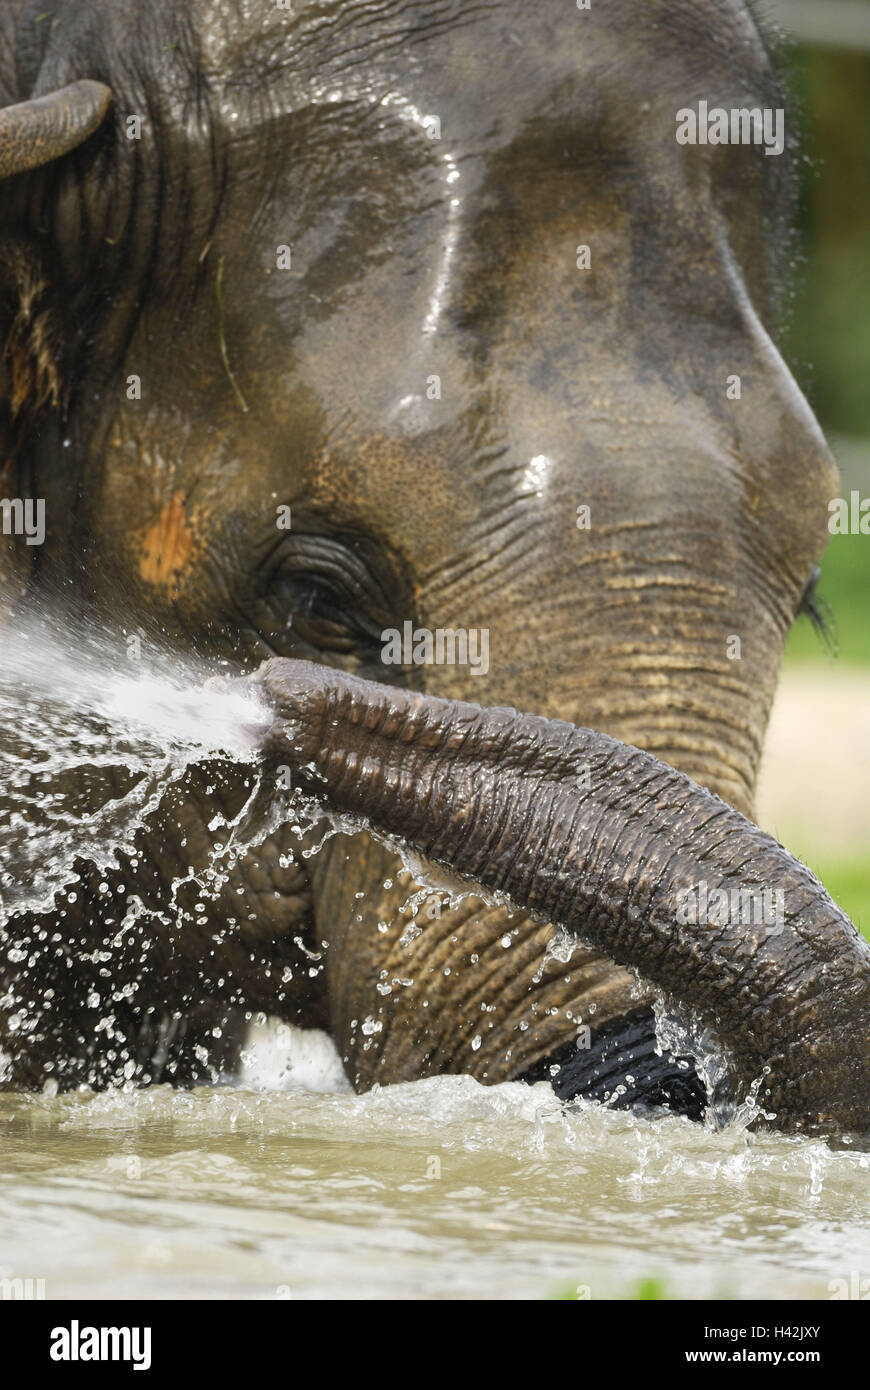 Asian elephant, Elephas maximus, bathing, water, portrait, Stock Photo